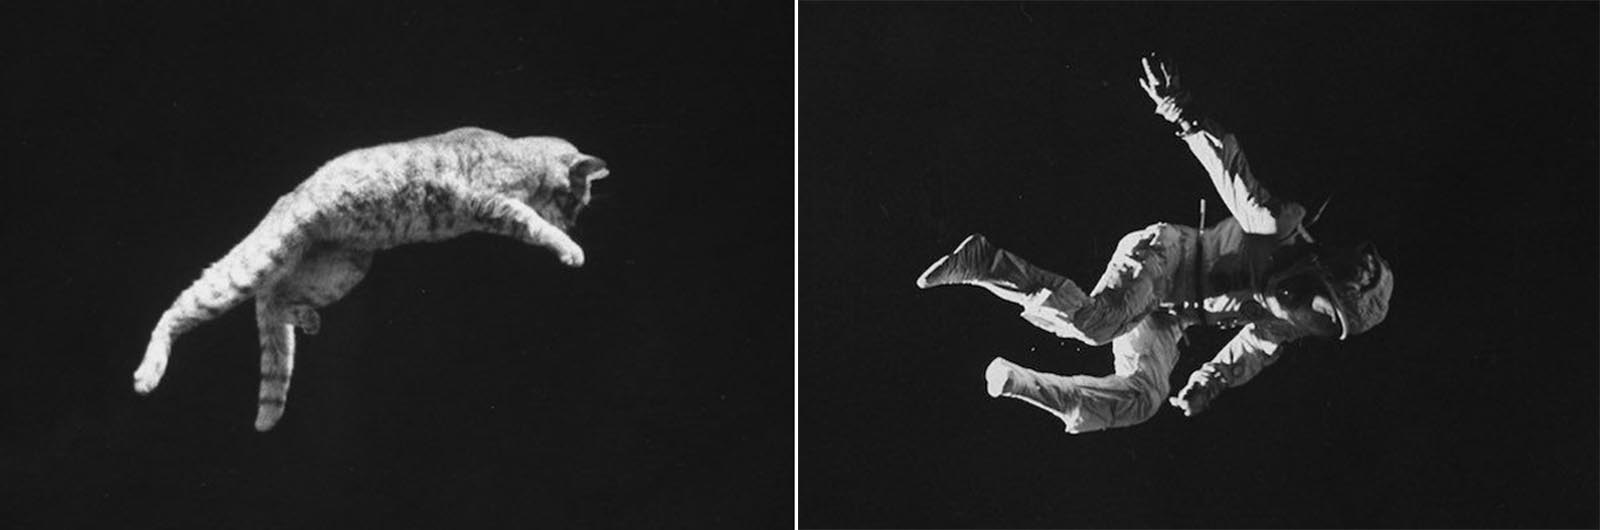 La “chute de chat” phénomène qui a aidé à la NASA préparer les astronautes de la gravité zéro, 1969